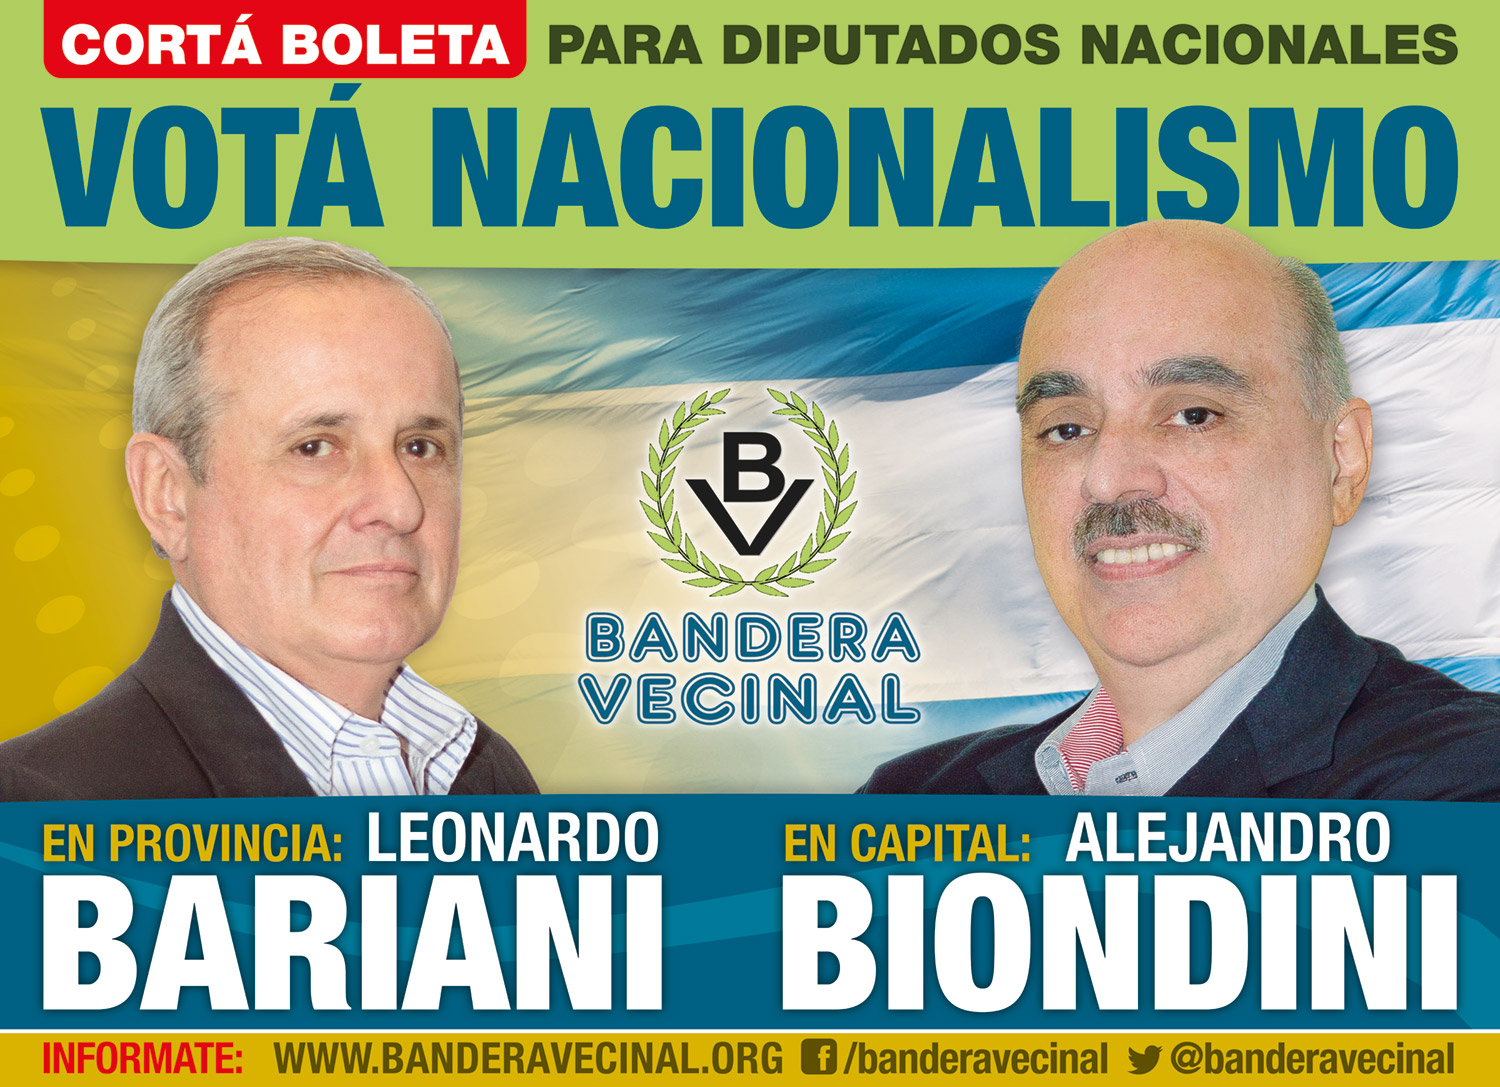 El 9 de agosto: Votá Nacionalismo, votá Bandera Vecinal